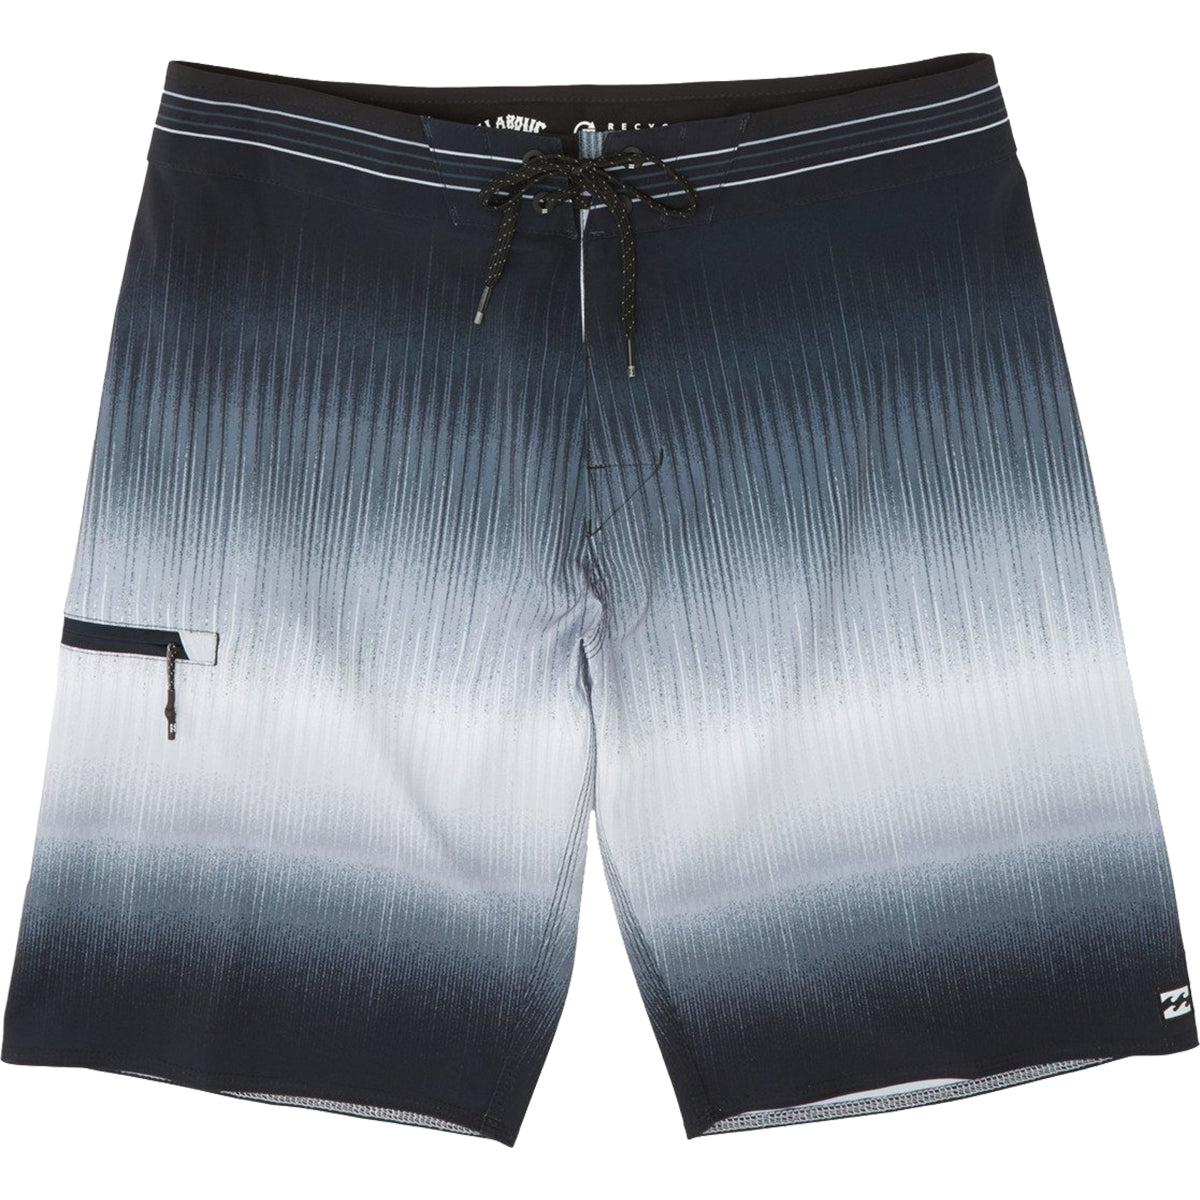 Billabong Fluid Airlite Men's Boardshort Shorts-M1041BFL